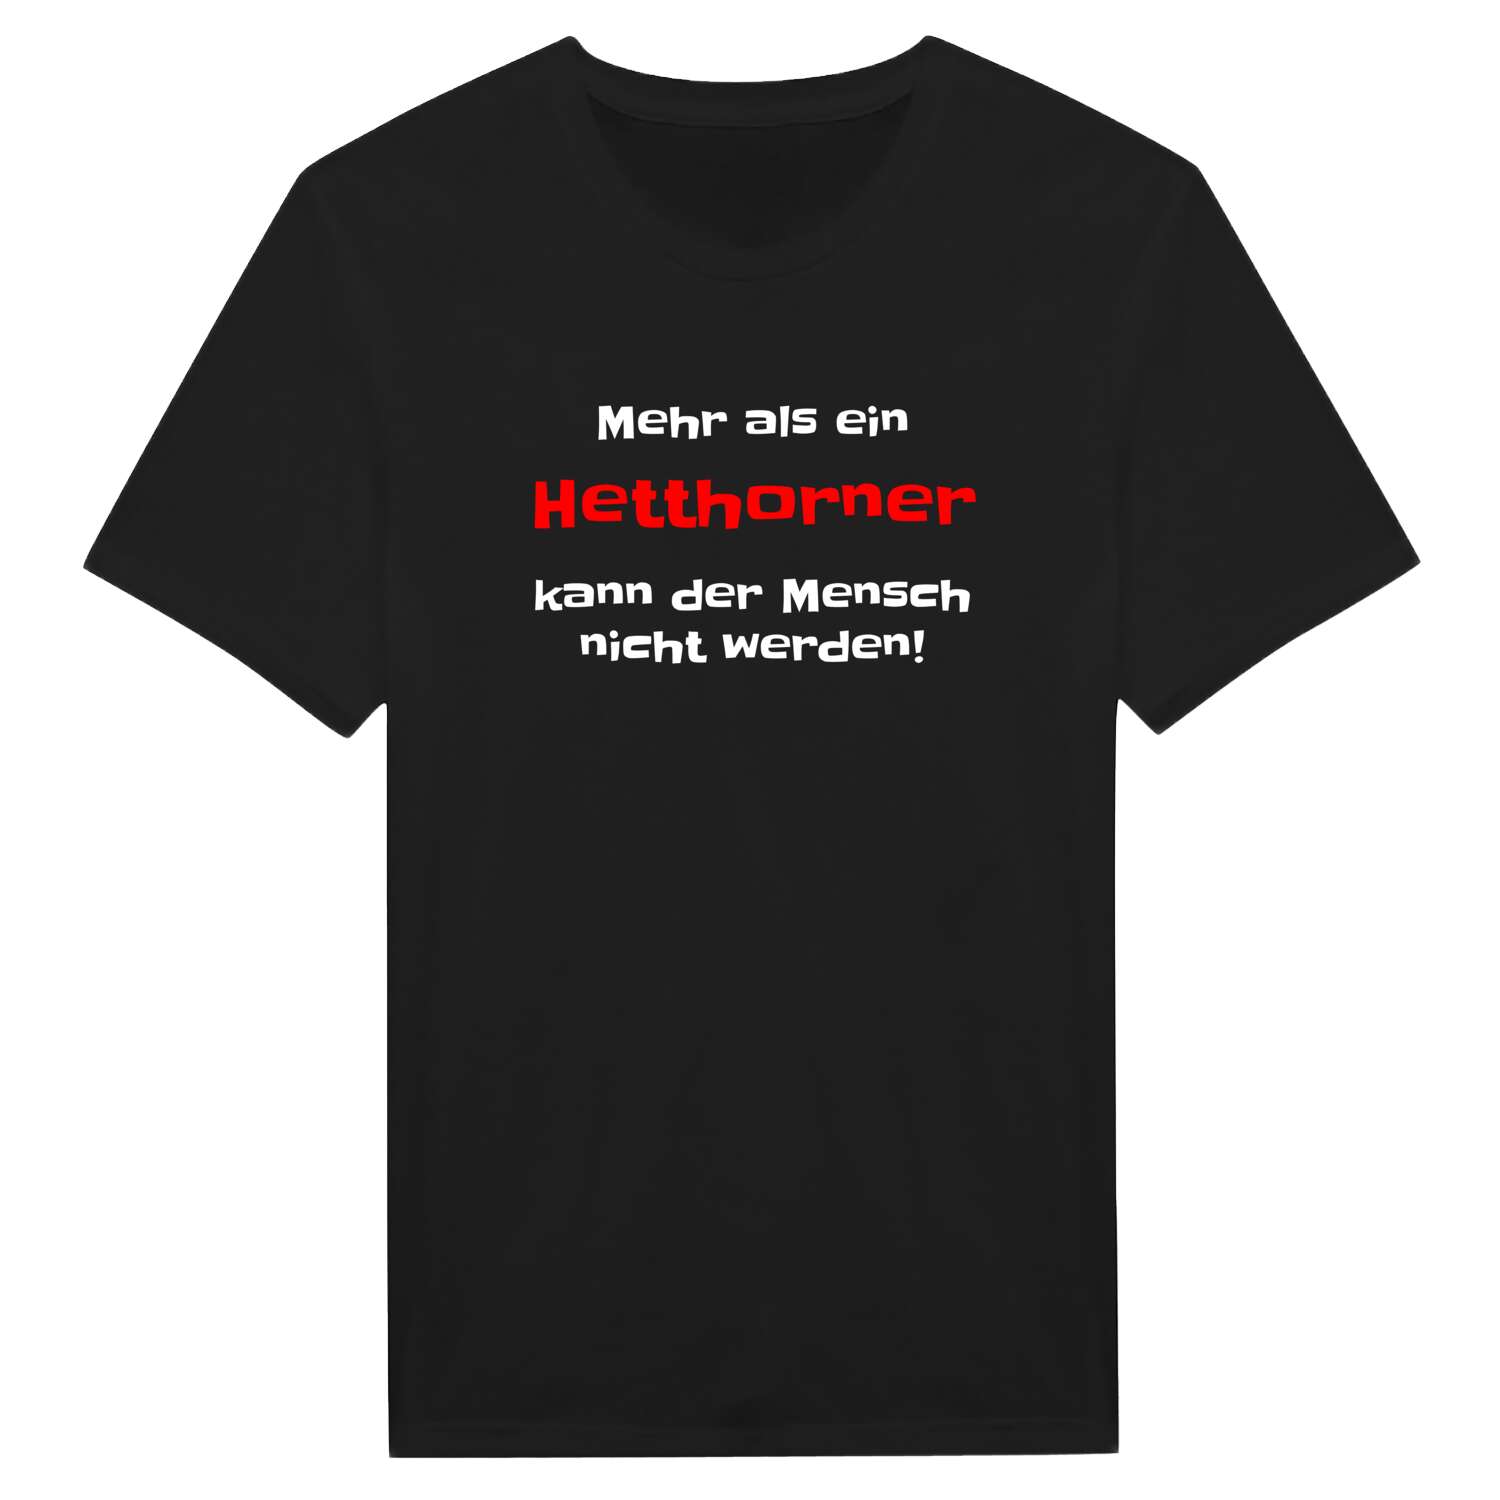 Hetthorn T-Shirt »Mehr als ein«